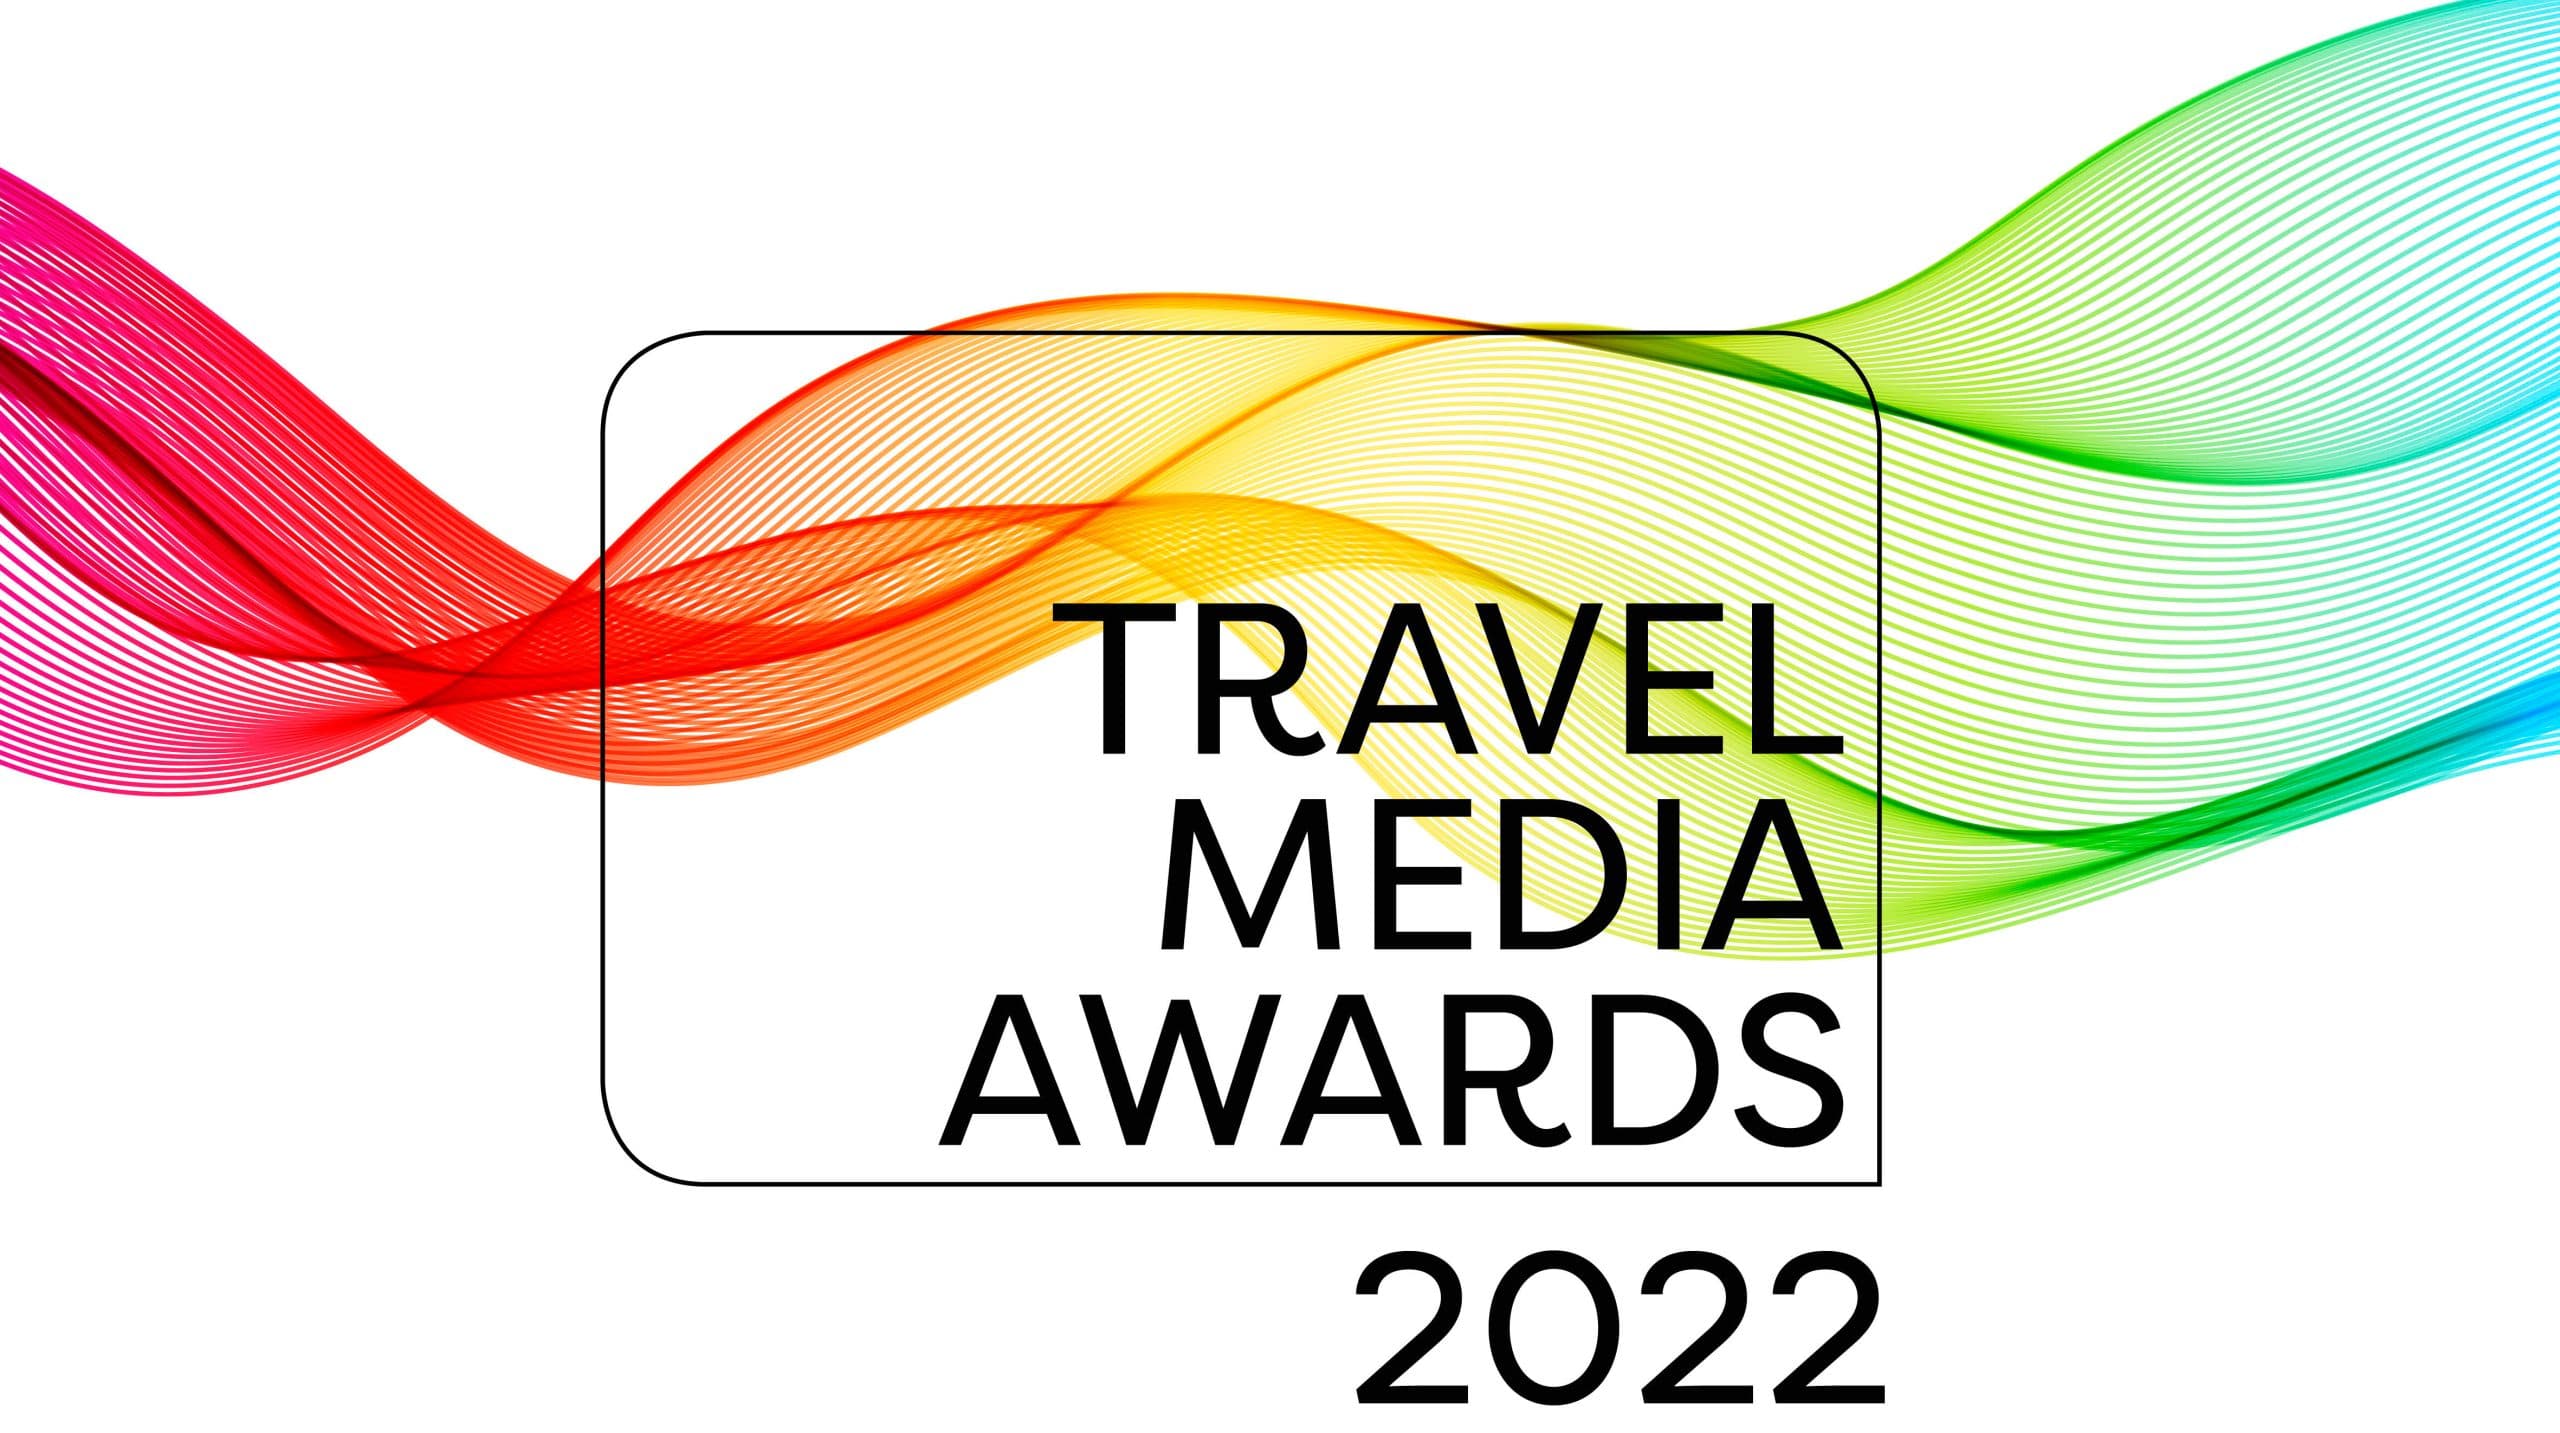 The Travel Media Awards 2022 logo.